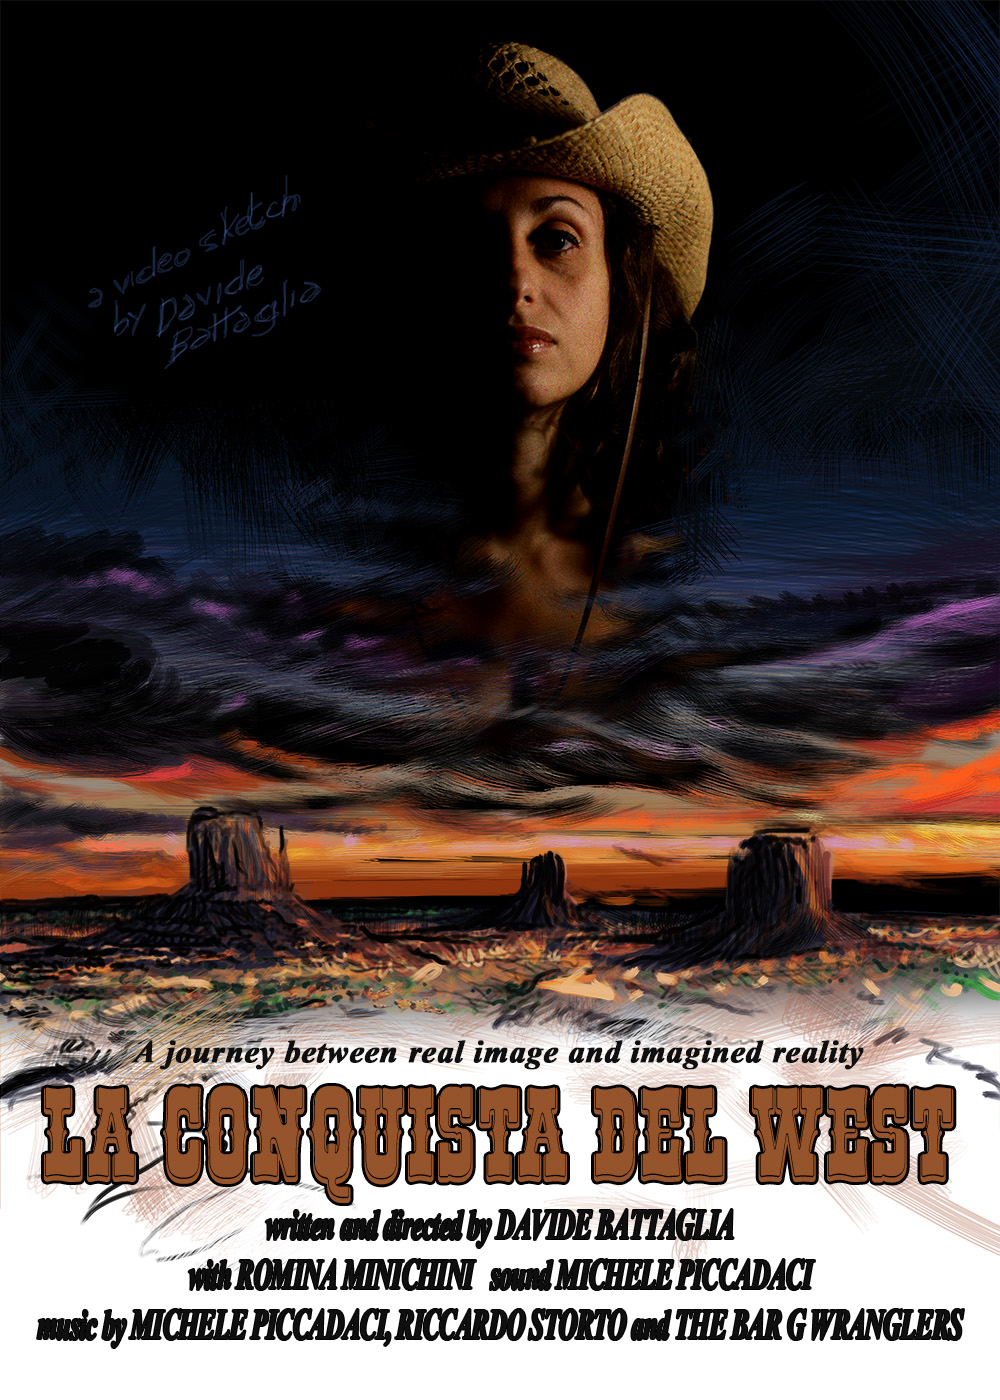 
Produttore e regista del documentario / video artistico 'La Conquista del West' (2016).
Locandina
